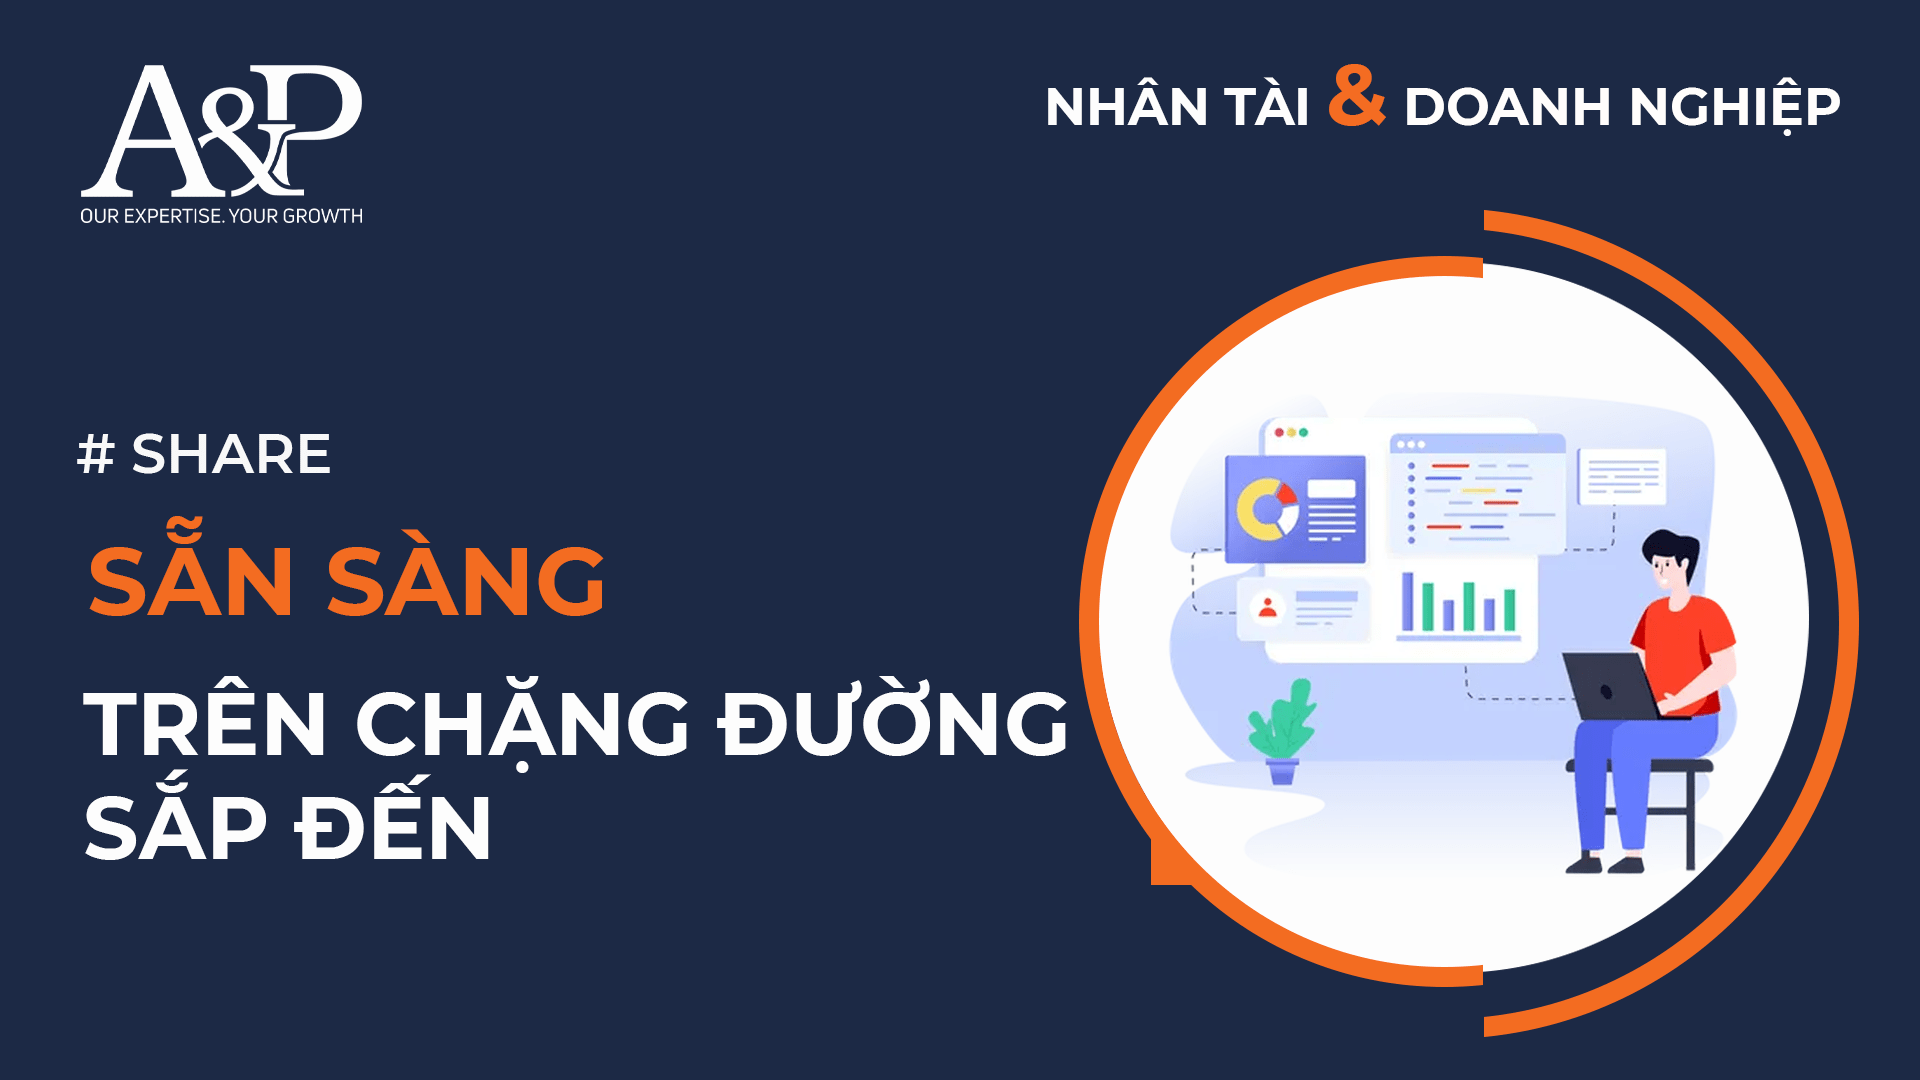 A&P Việt Nam chia sẻ cùng bạn các “bí kíp” giúp bạn không chỉ hội nhập thành công, mà còn tạo dấu ấn ngay trong giai đoạn chuyển tiếp